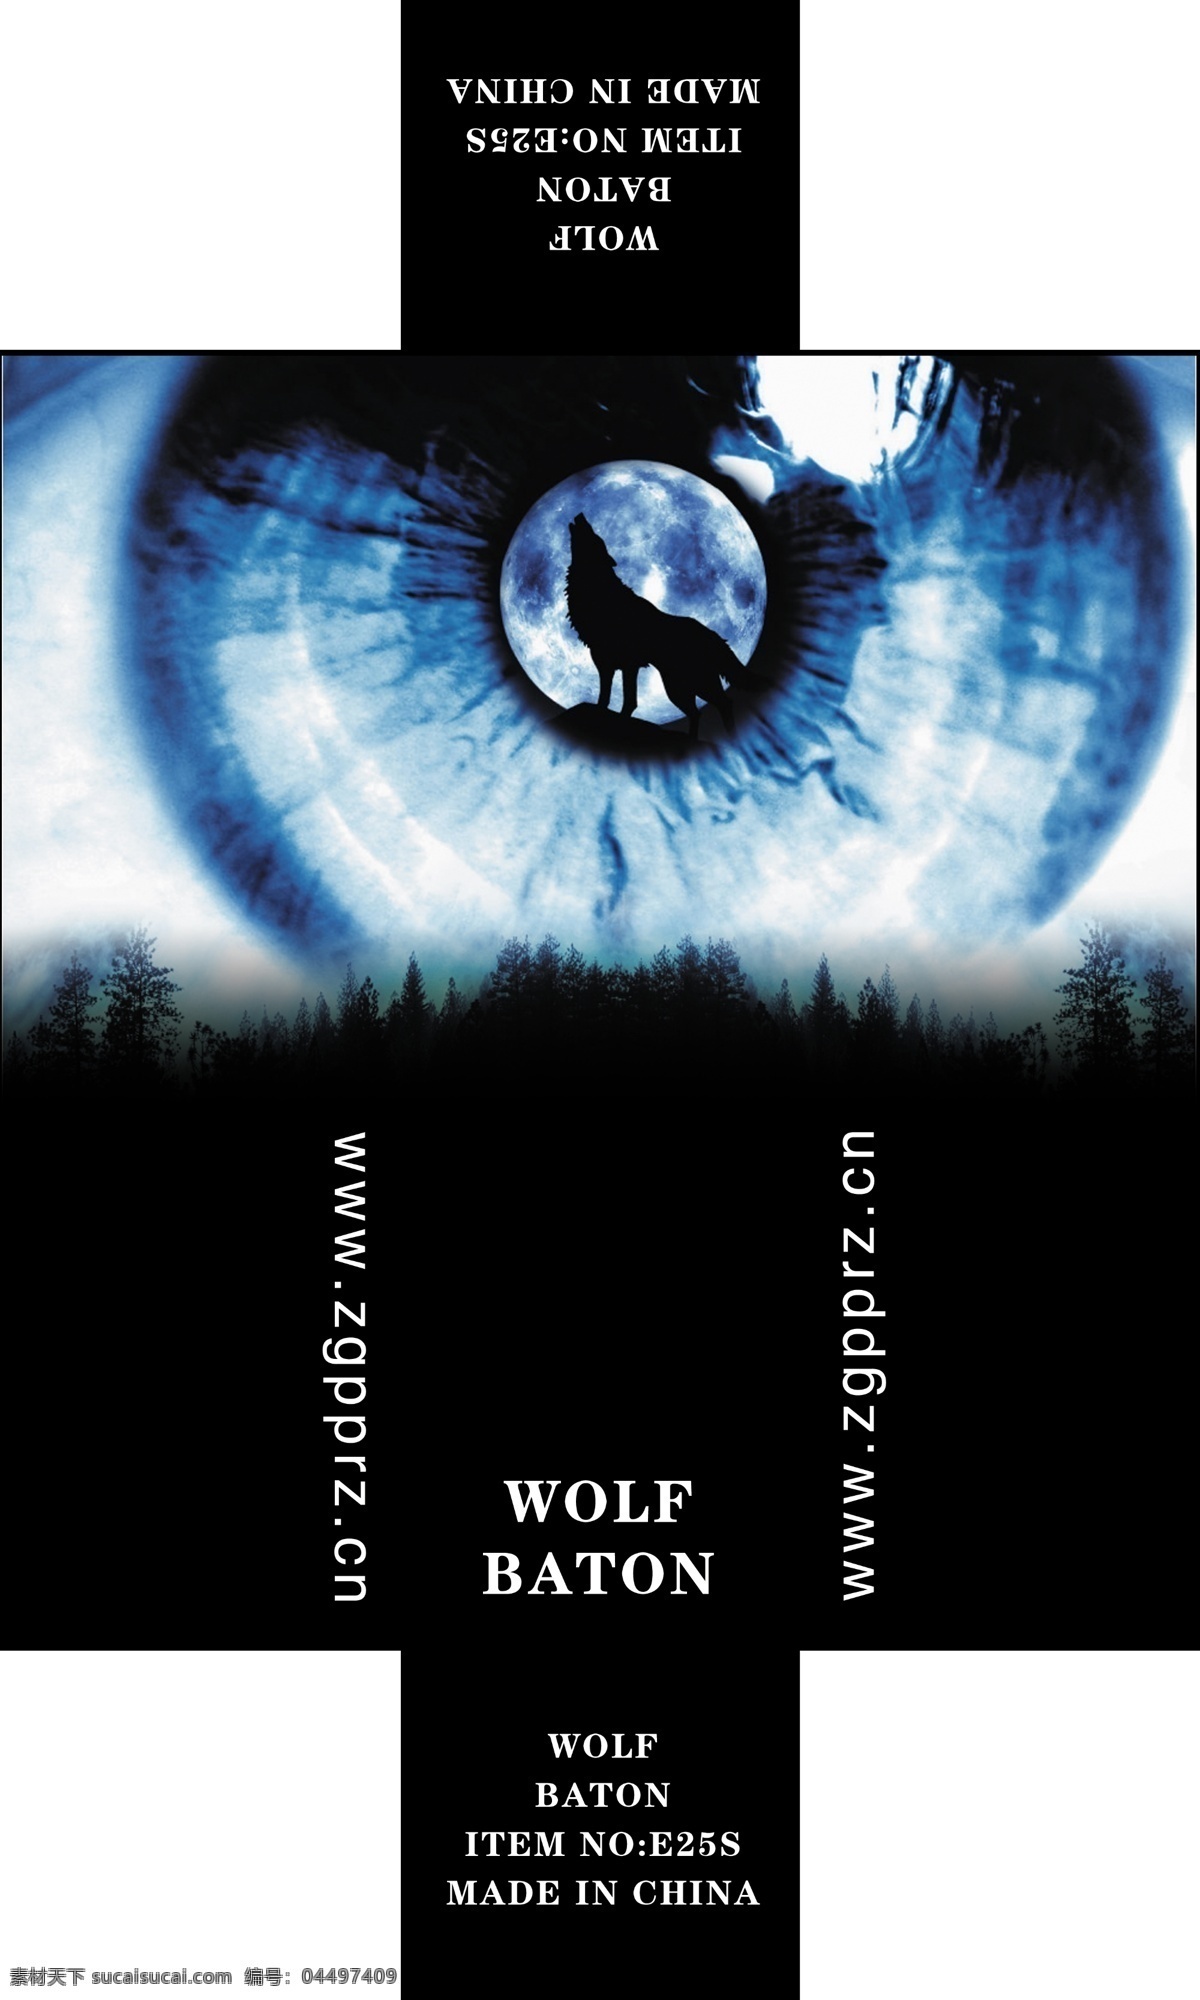 独狼 狼 甩棍 包装盒 包装设计 眼睛 狼嚎 广告设计模板 源文件